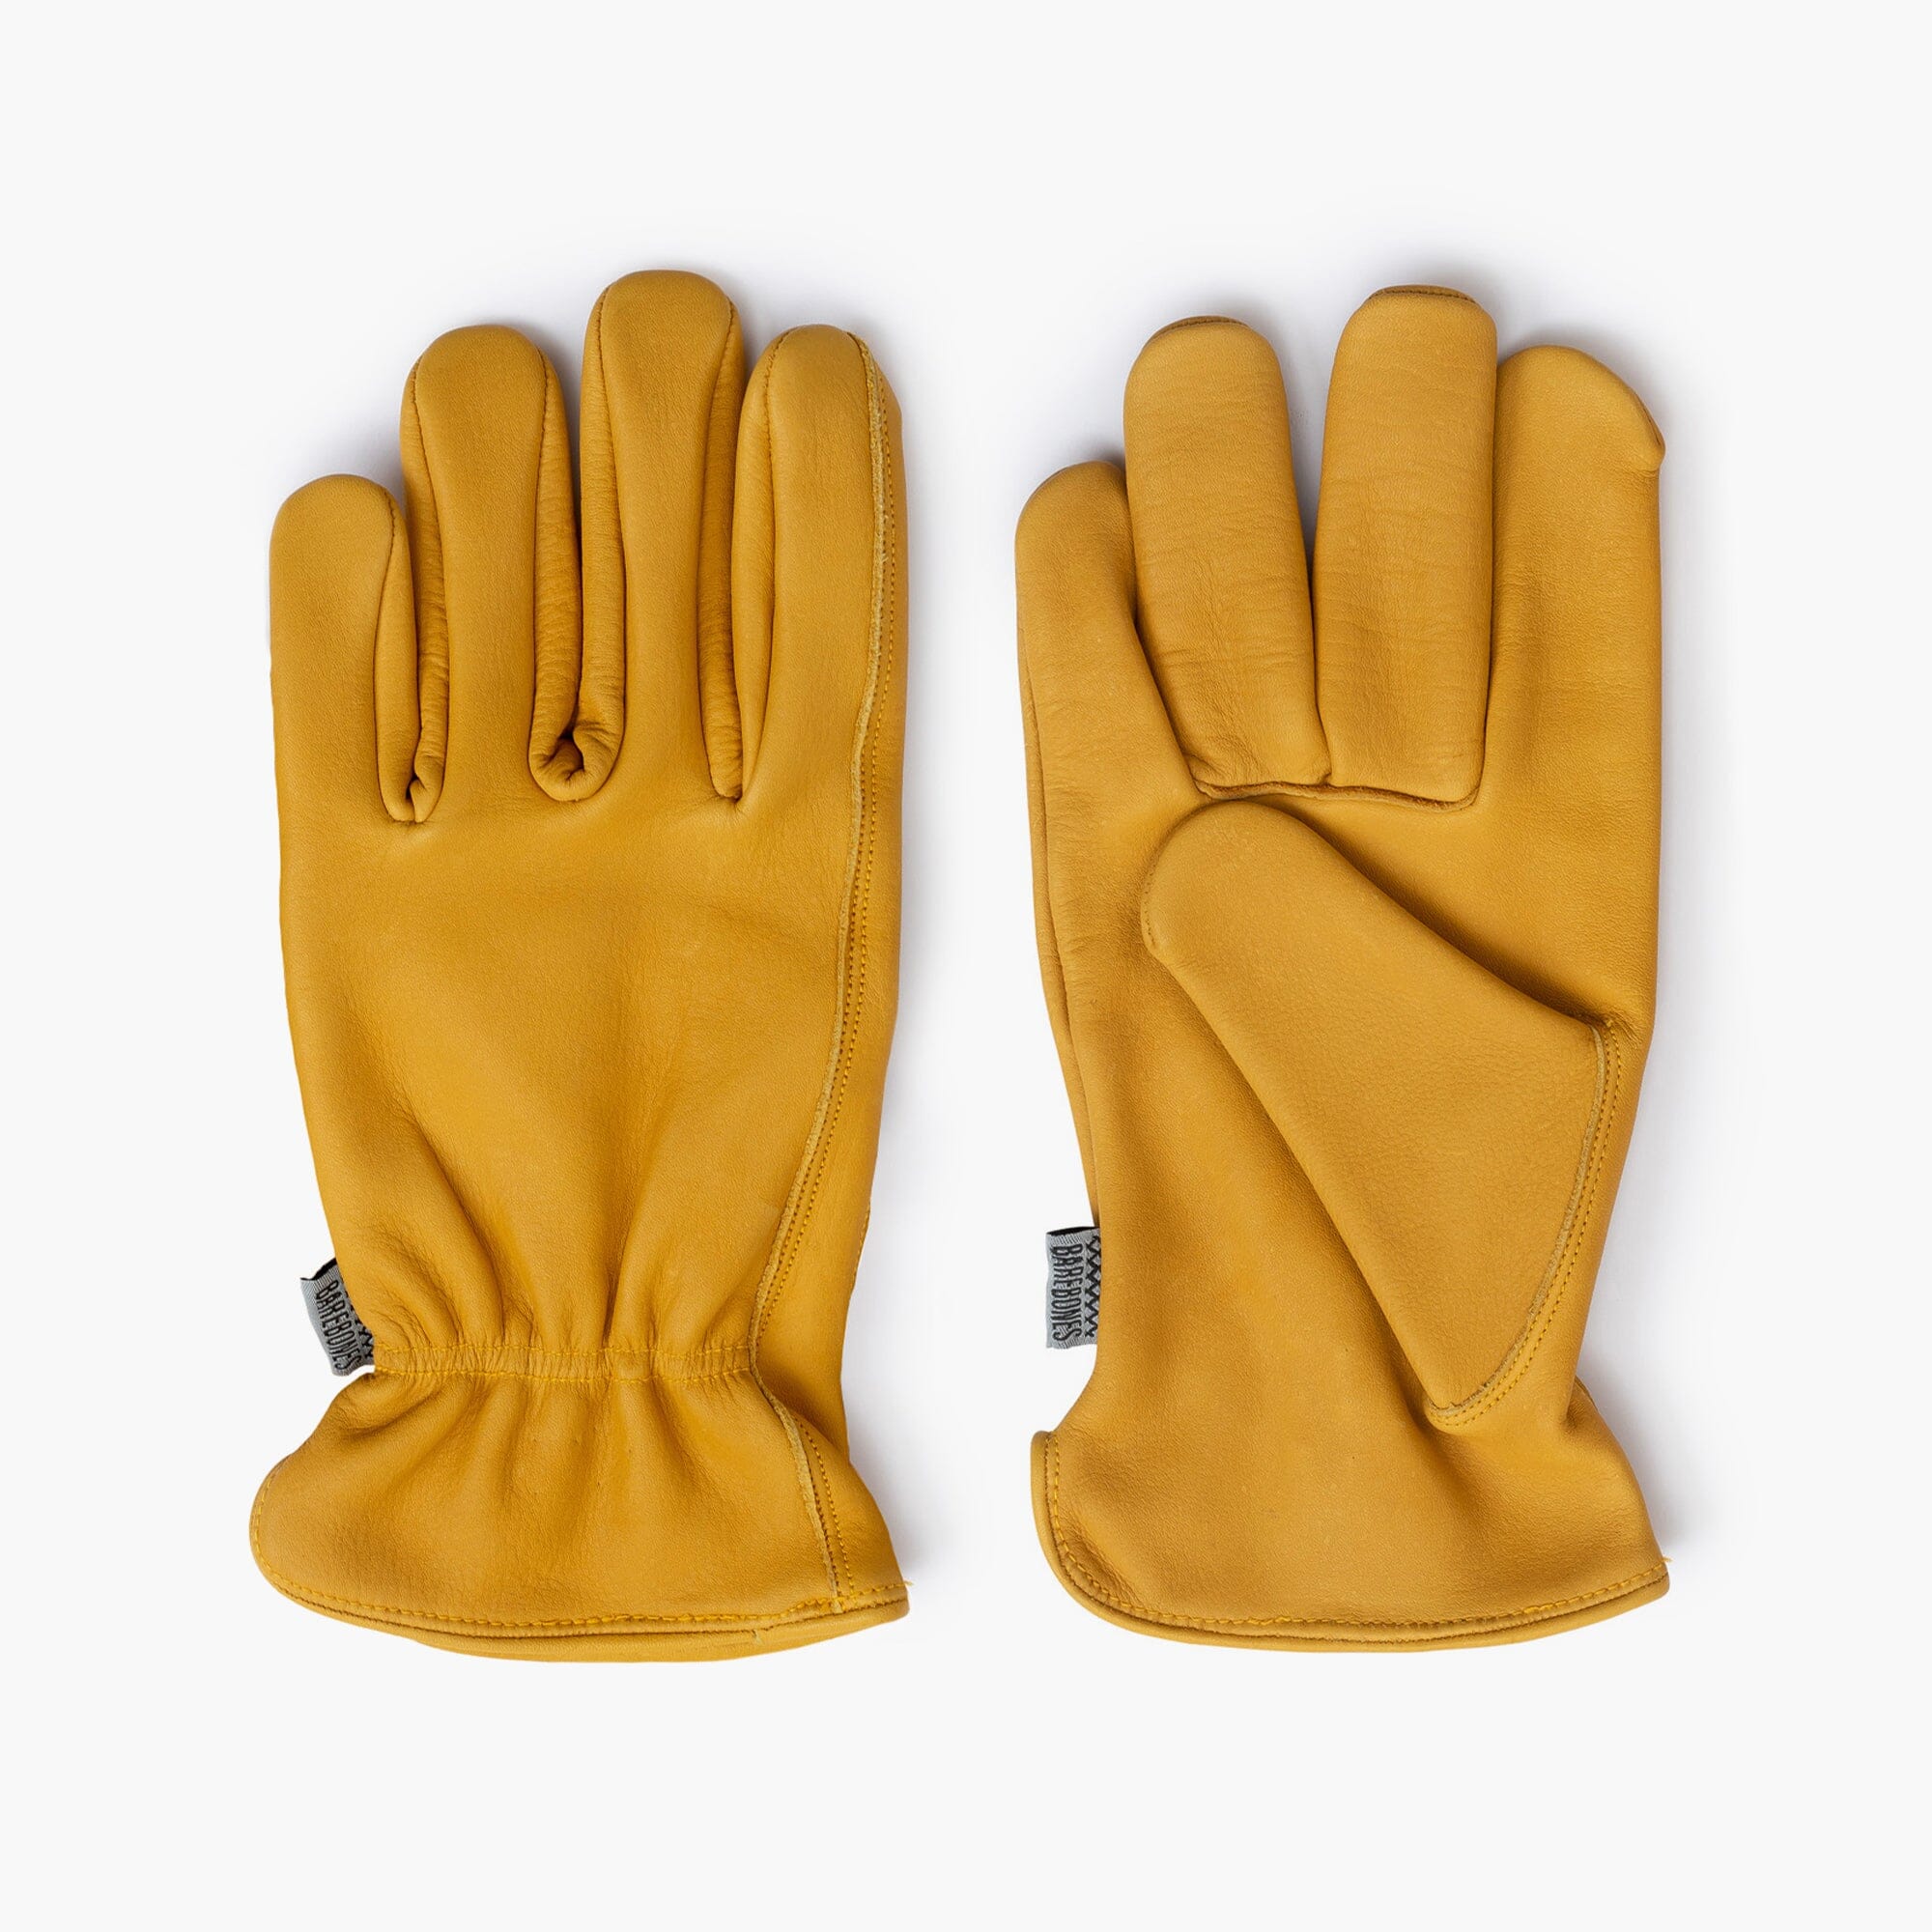 Pit Grip Gloves